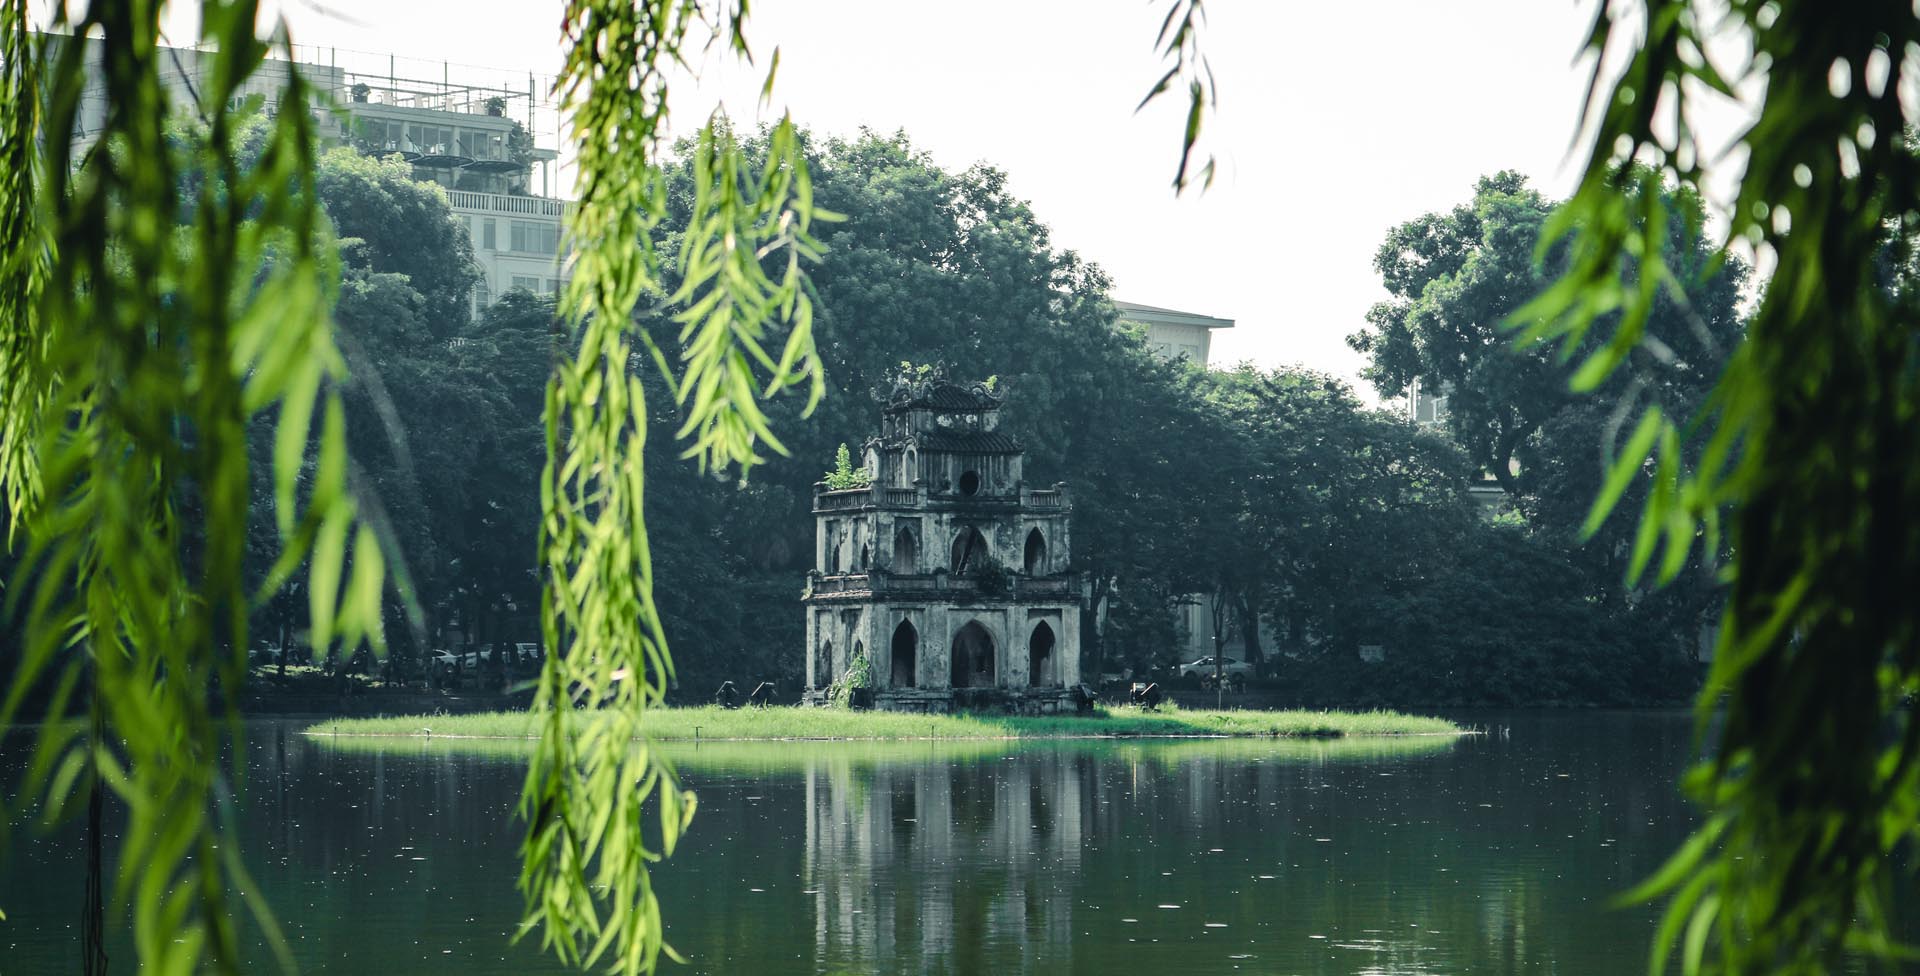 Hình ảnh hồ Gươm đẹp, lãng mạn và mang ý nghĩa lịch sử Việt Nam